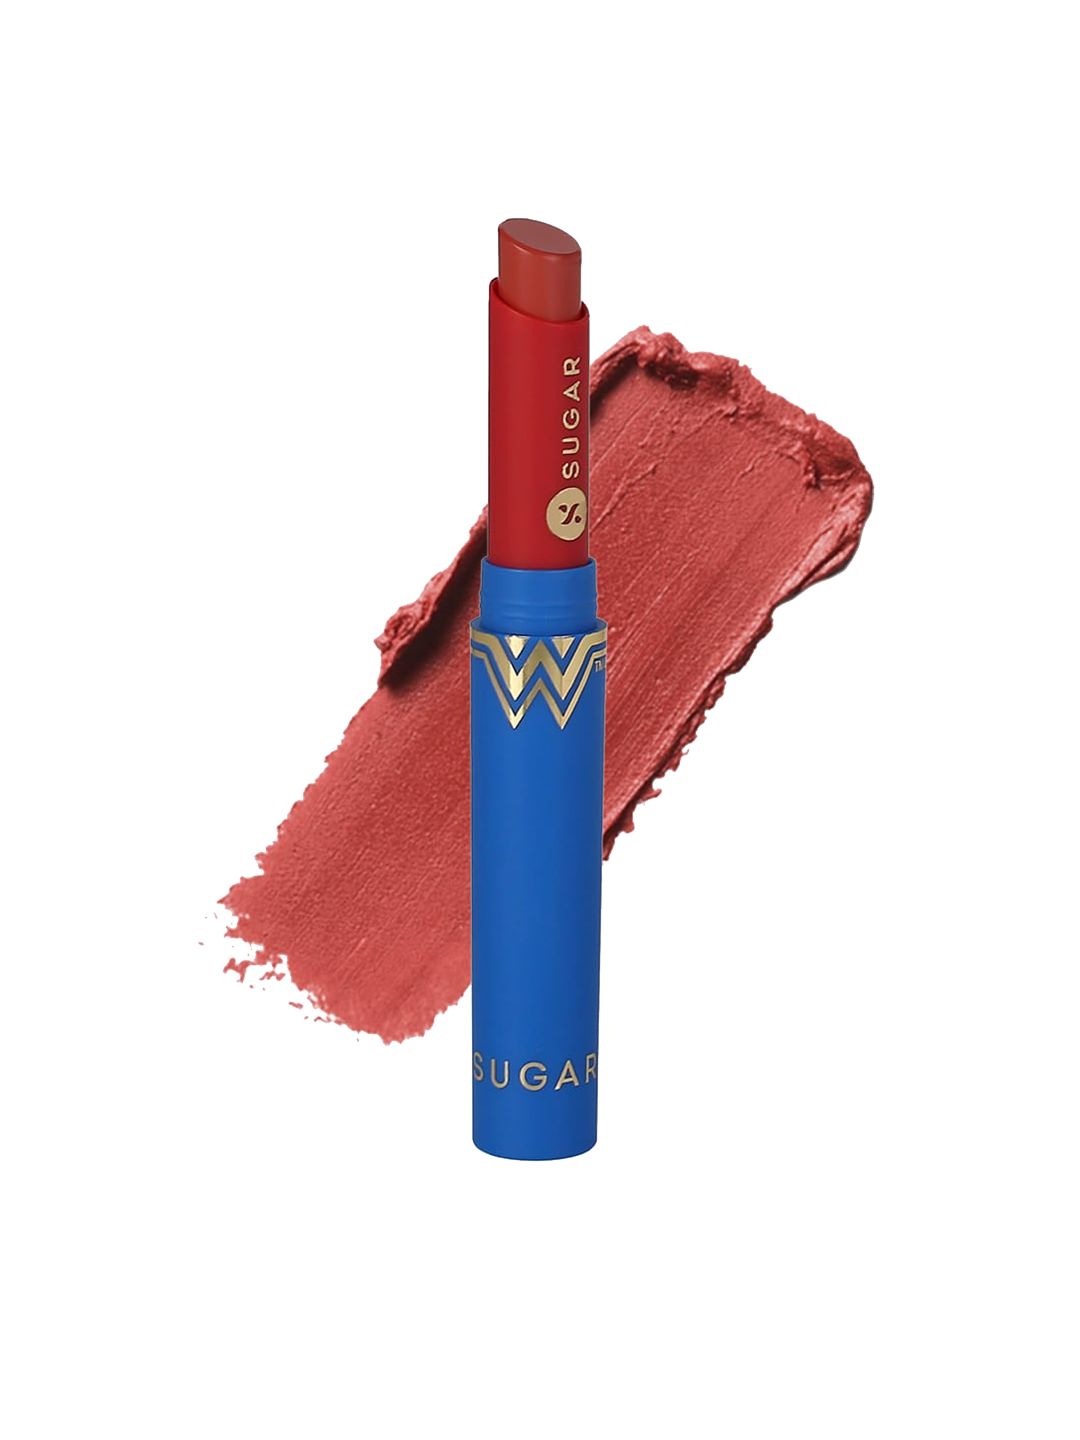 SUGAR  Wonder Woman Creamy Matte Lipstick 04 Wild Wonder Price in India